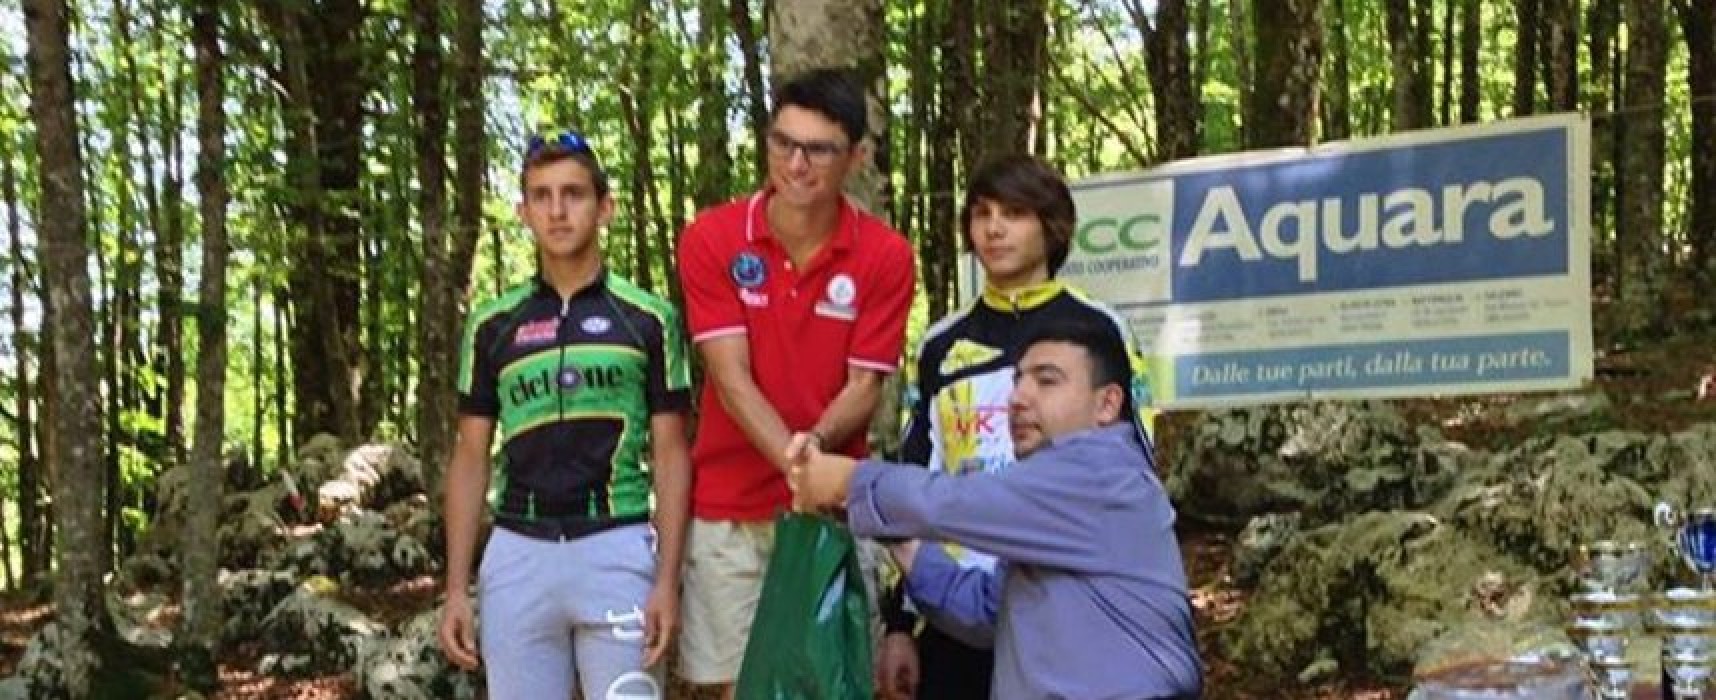 Ciclismo: cinque atleti Cavallaro convocati per i Campionati Italiani